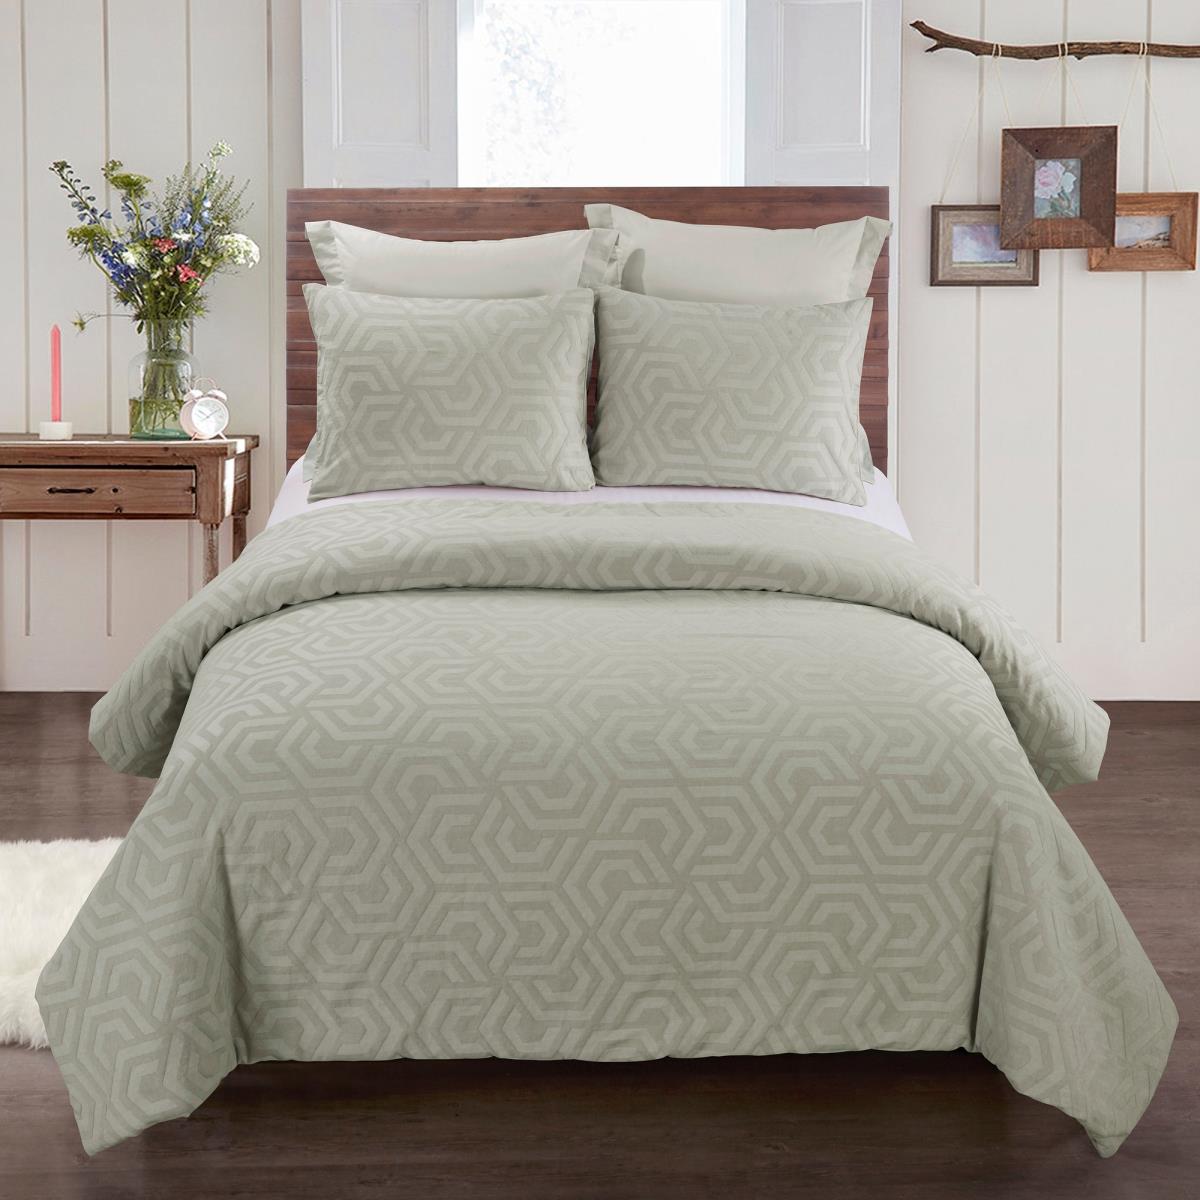 Y00710 Queen Size Comforter Set - Seville Sage